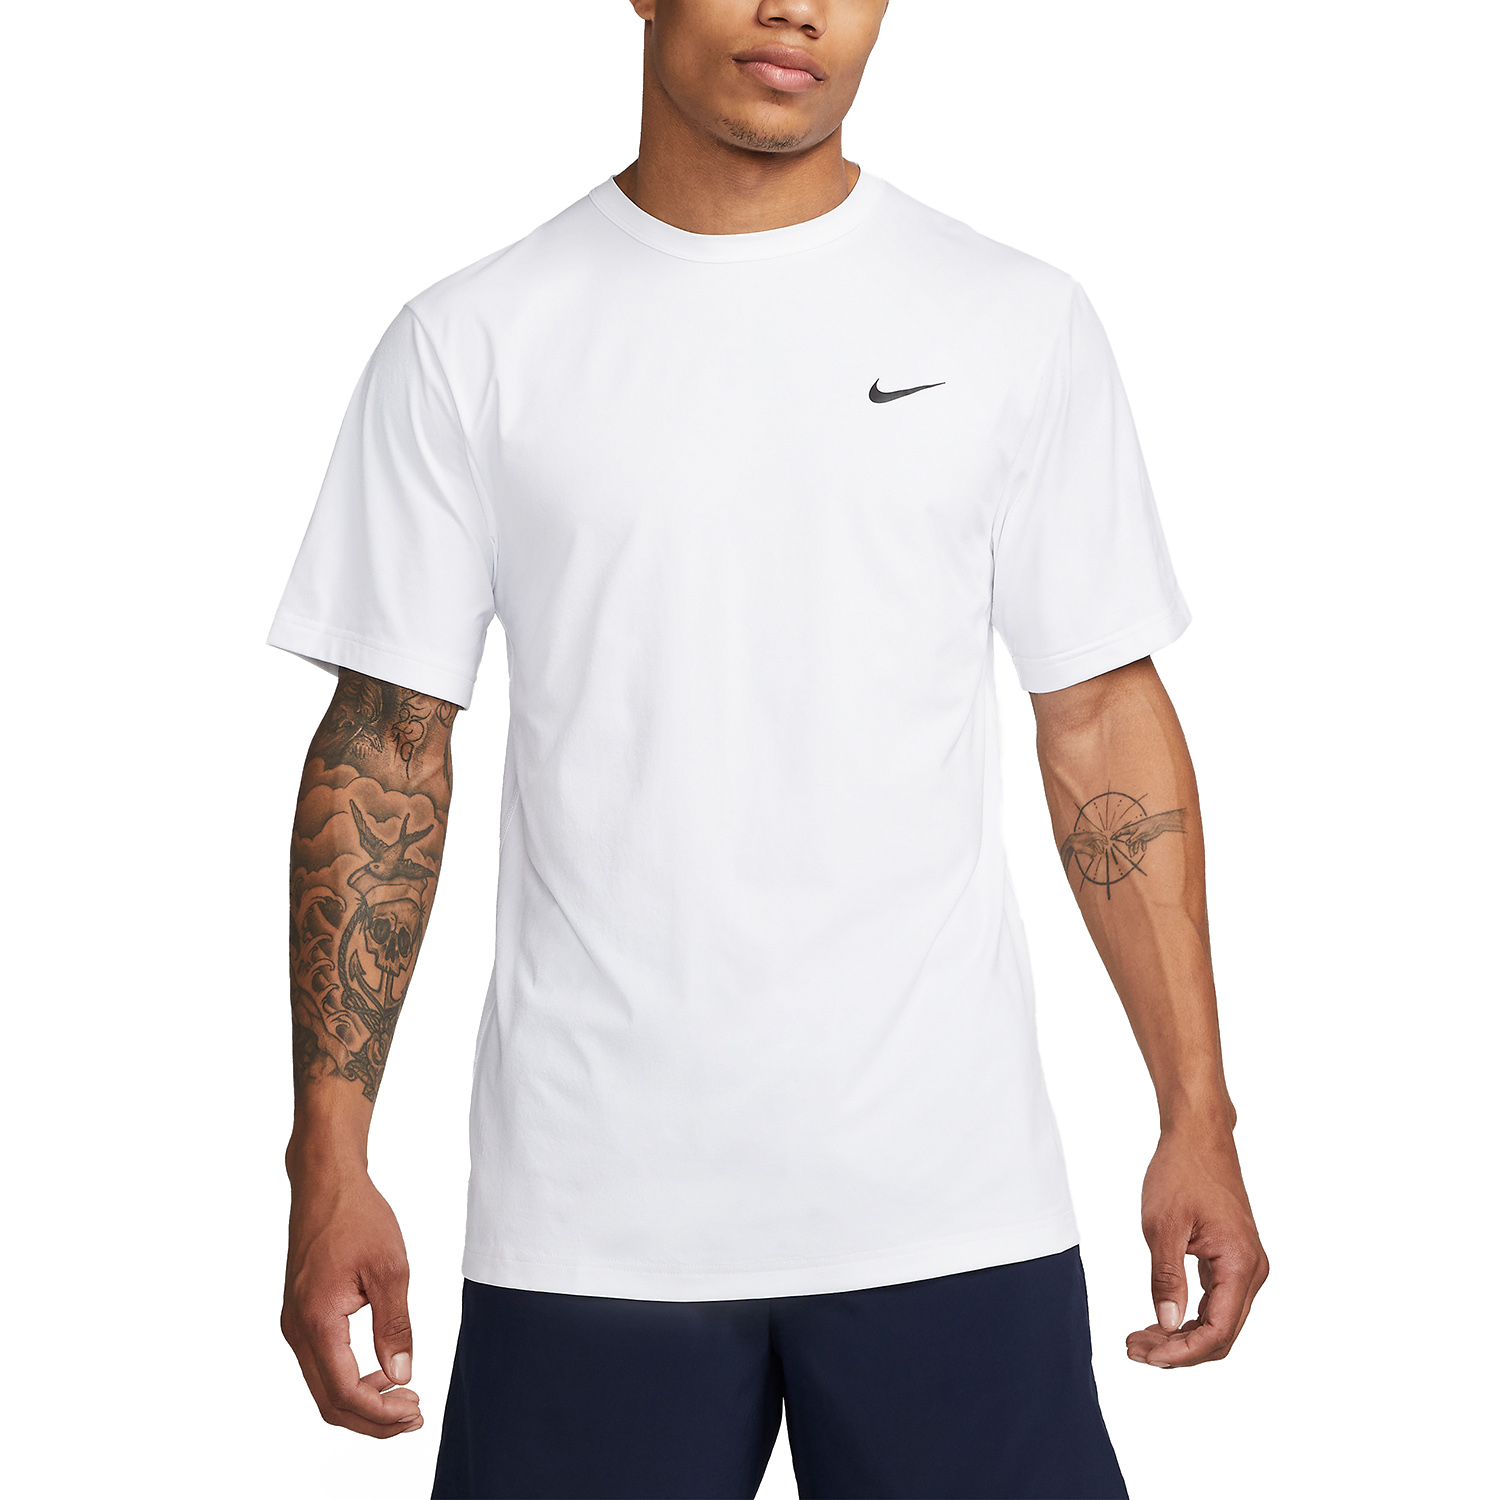 Nike Dri-FIT Hyverse Men's Training T-Shirt - White/Black